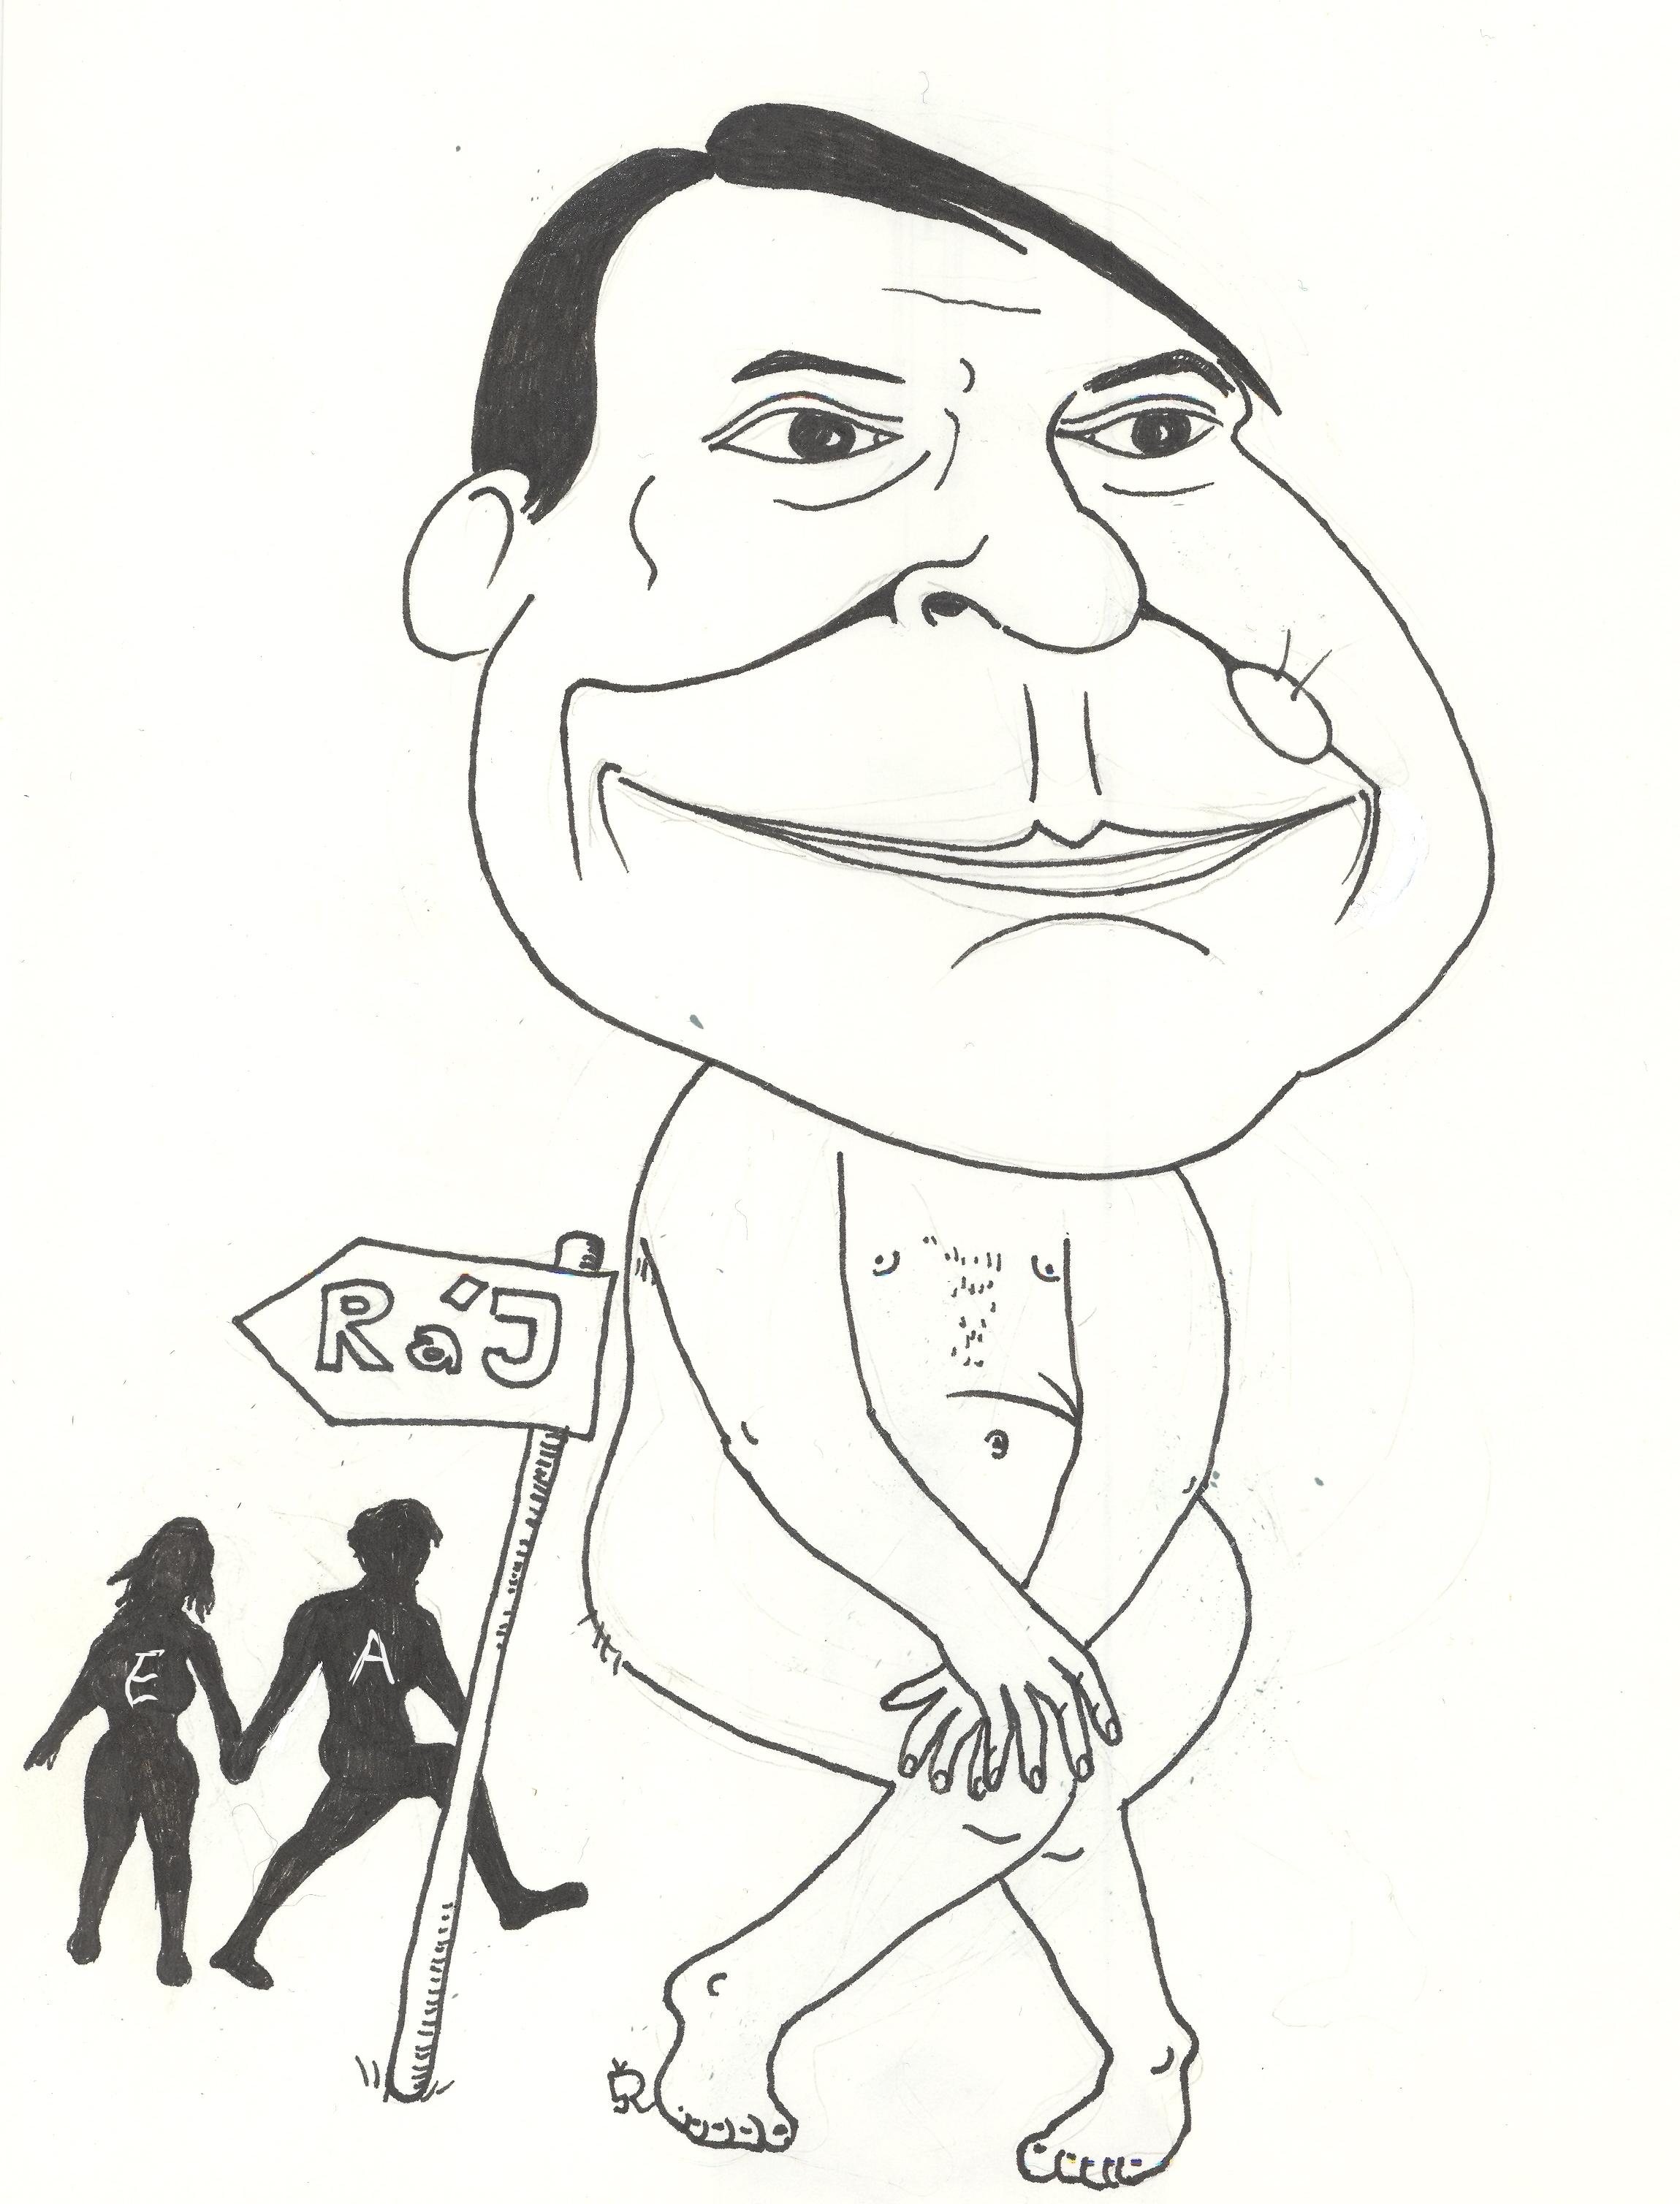 Jiří Paroubek
karikatura